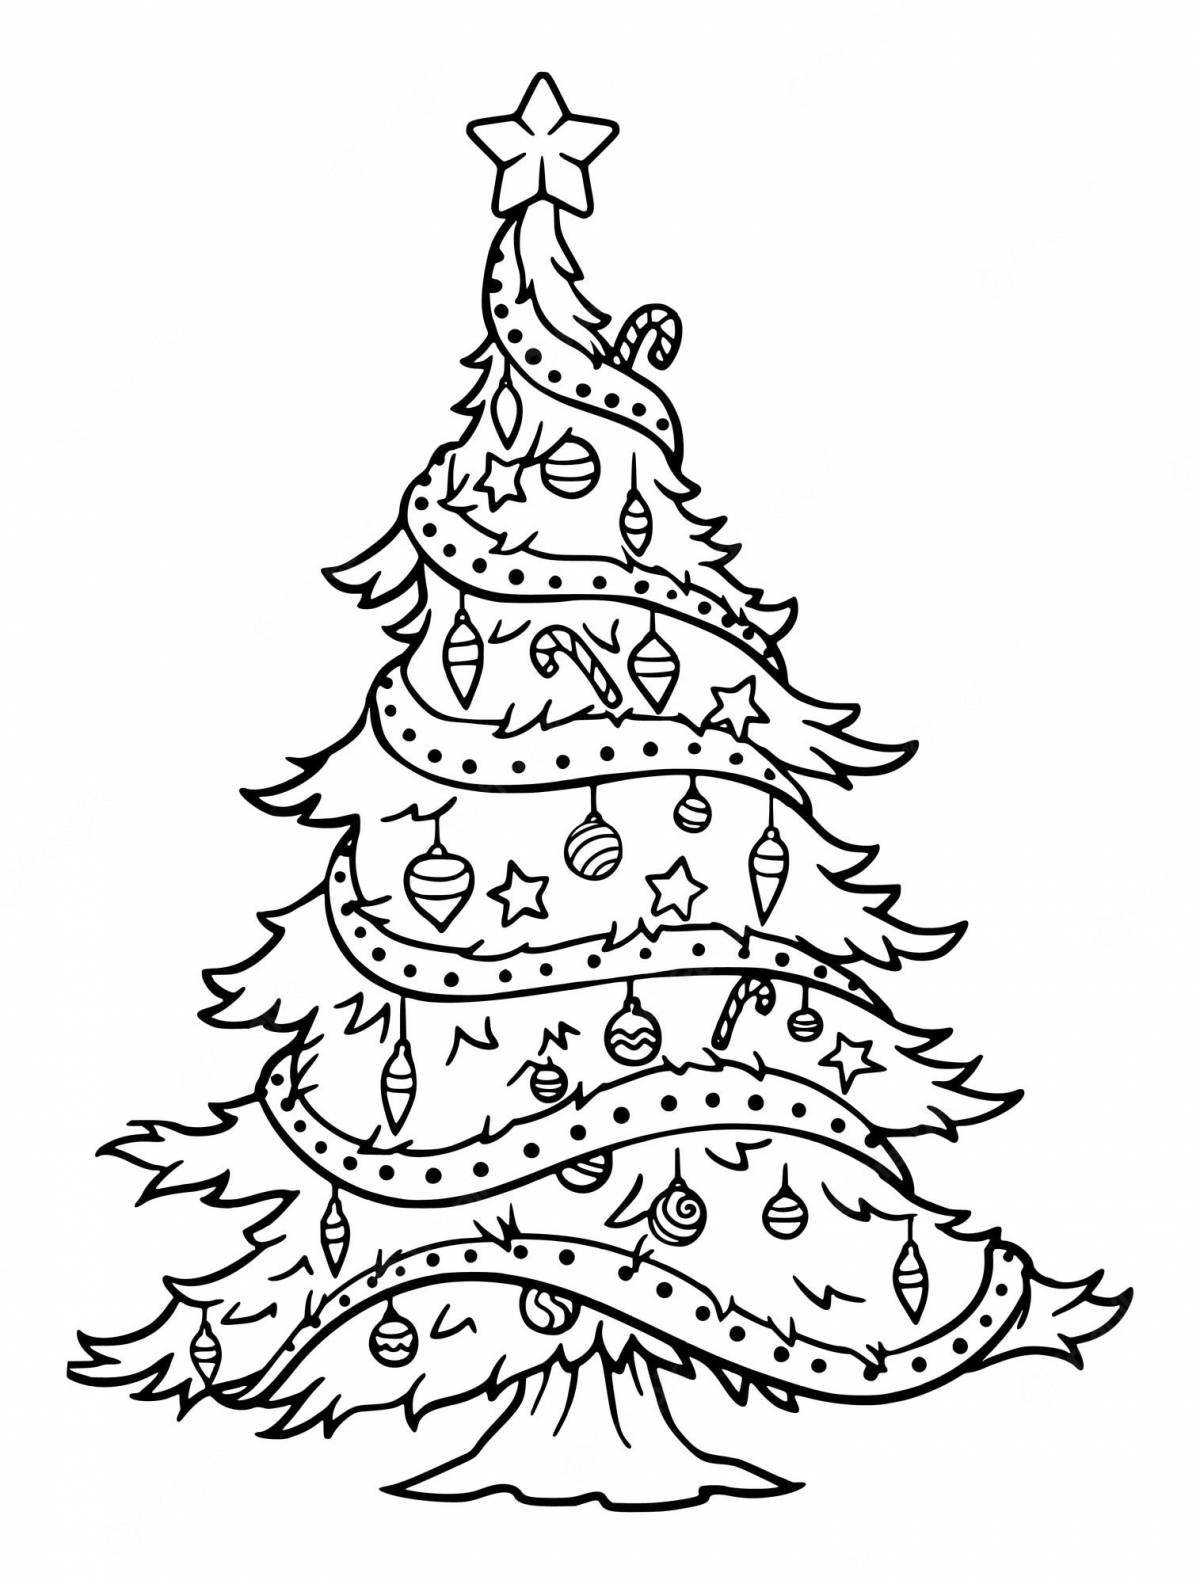 Красочная страница раскраски рождественской елки для детей